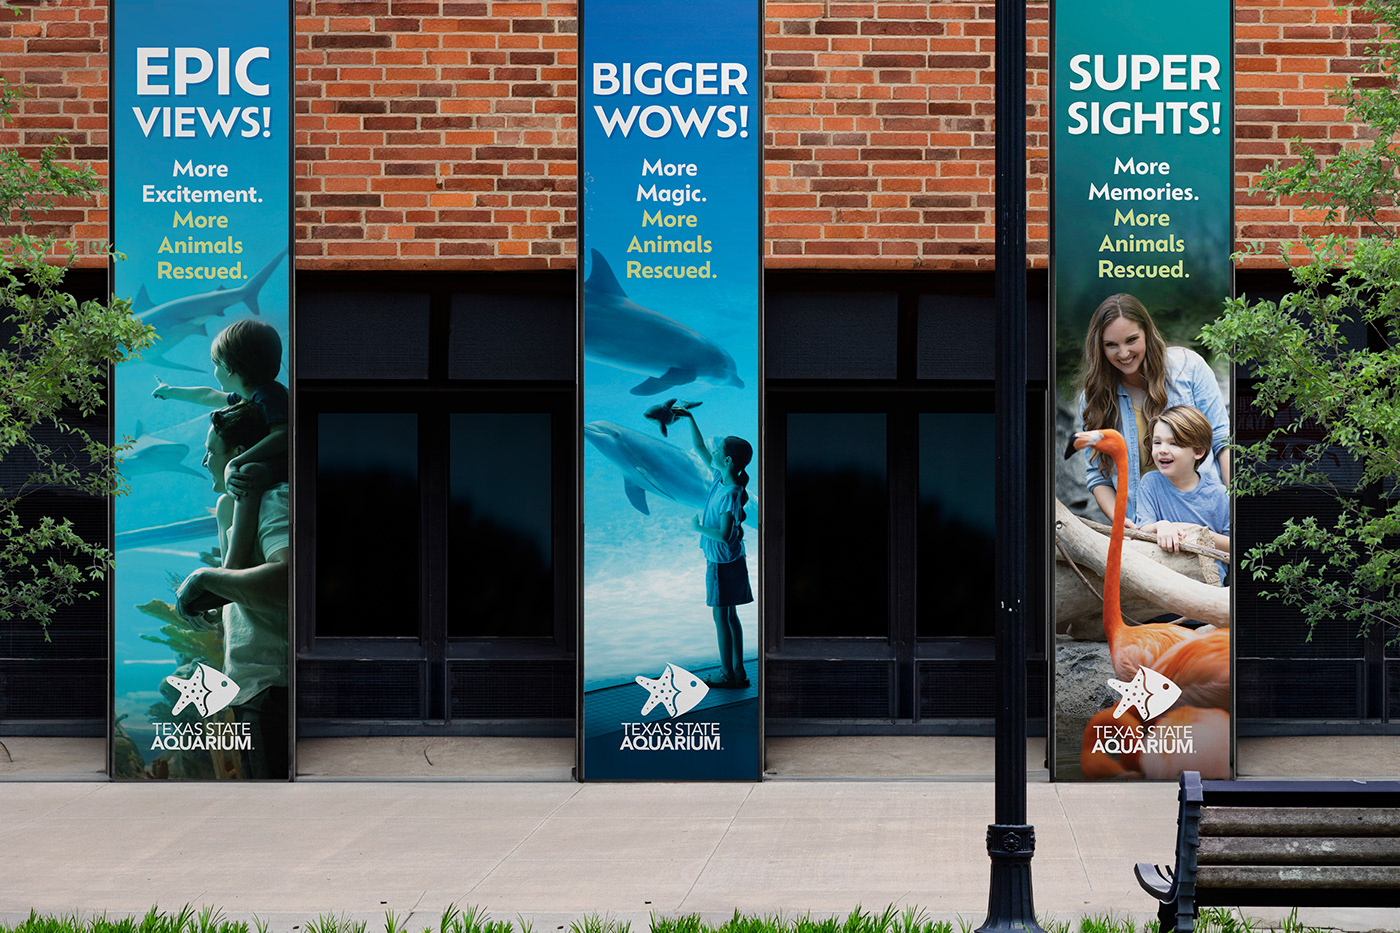 Adobe Portfolio aquarium texas Logo Design billboard design Advertising  Corpus Christi